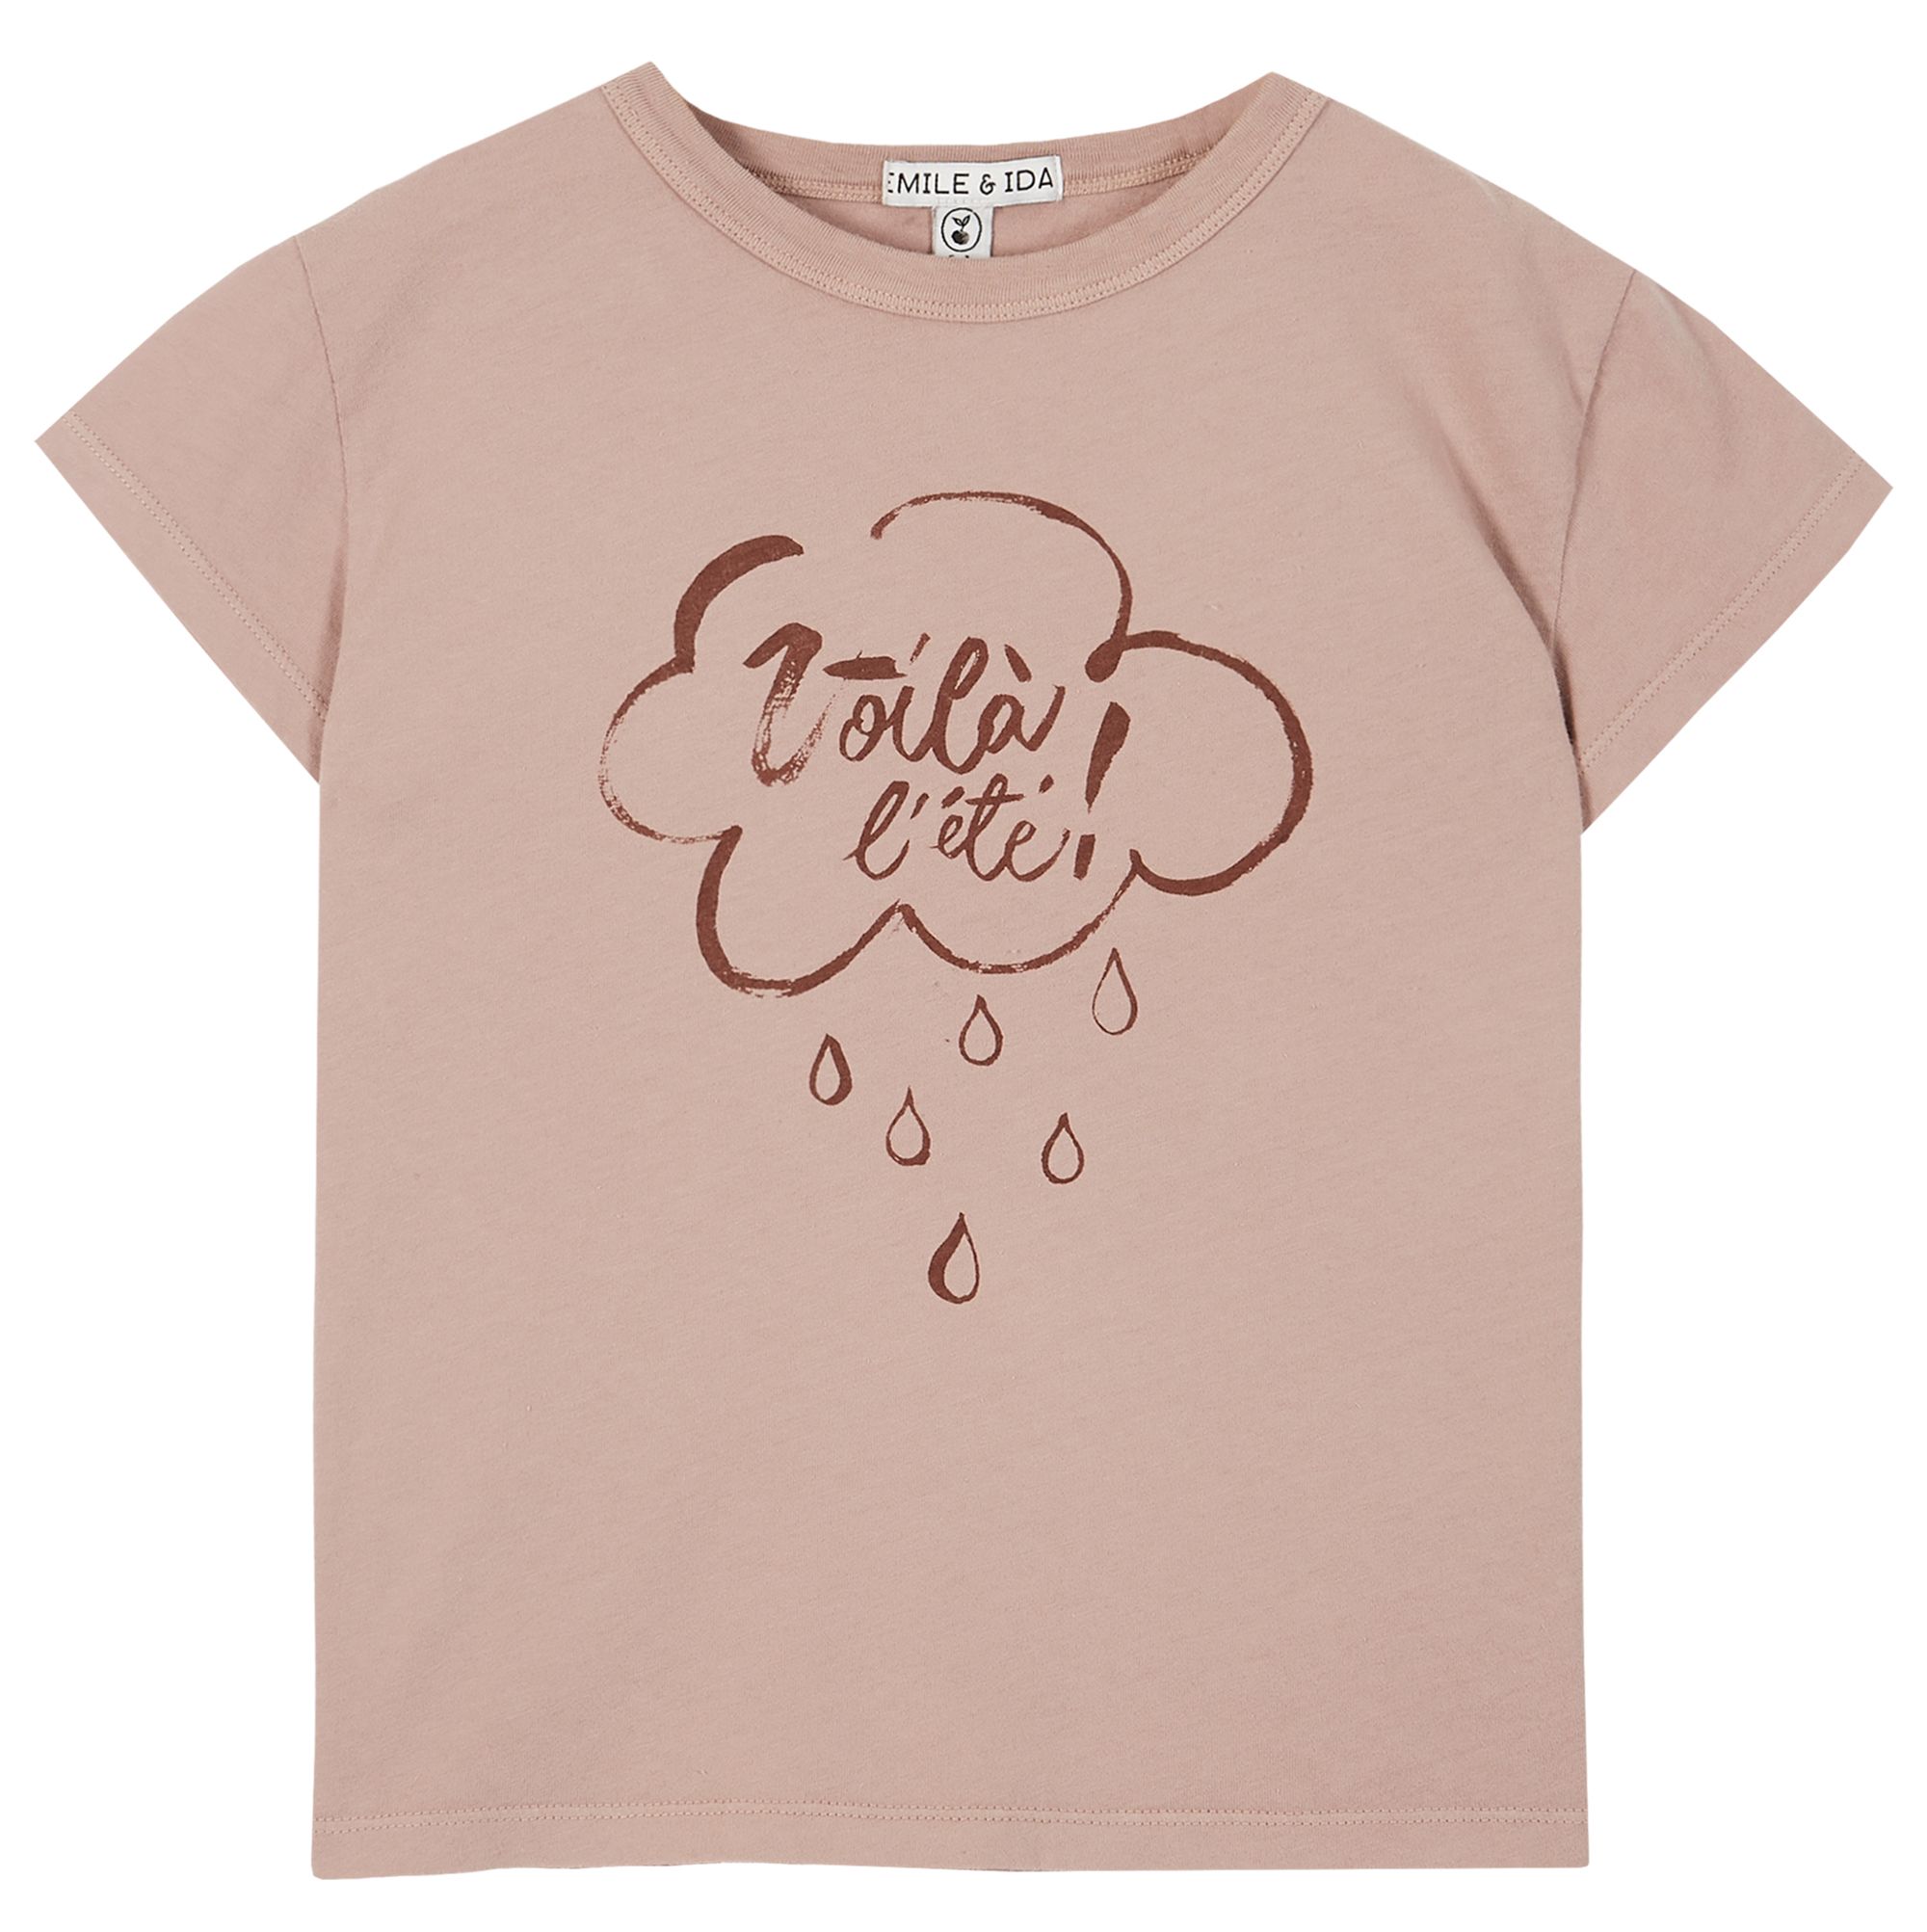 EMILE & IDA | Mauve – T-Shirt Voilà C’est L’été